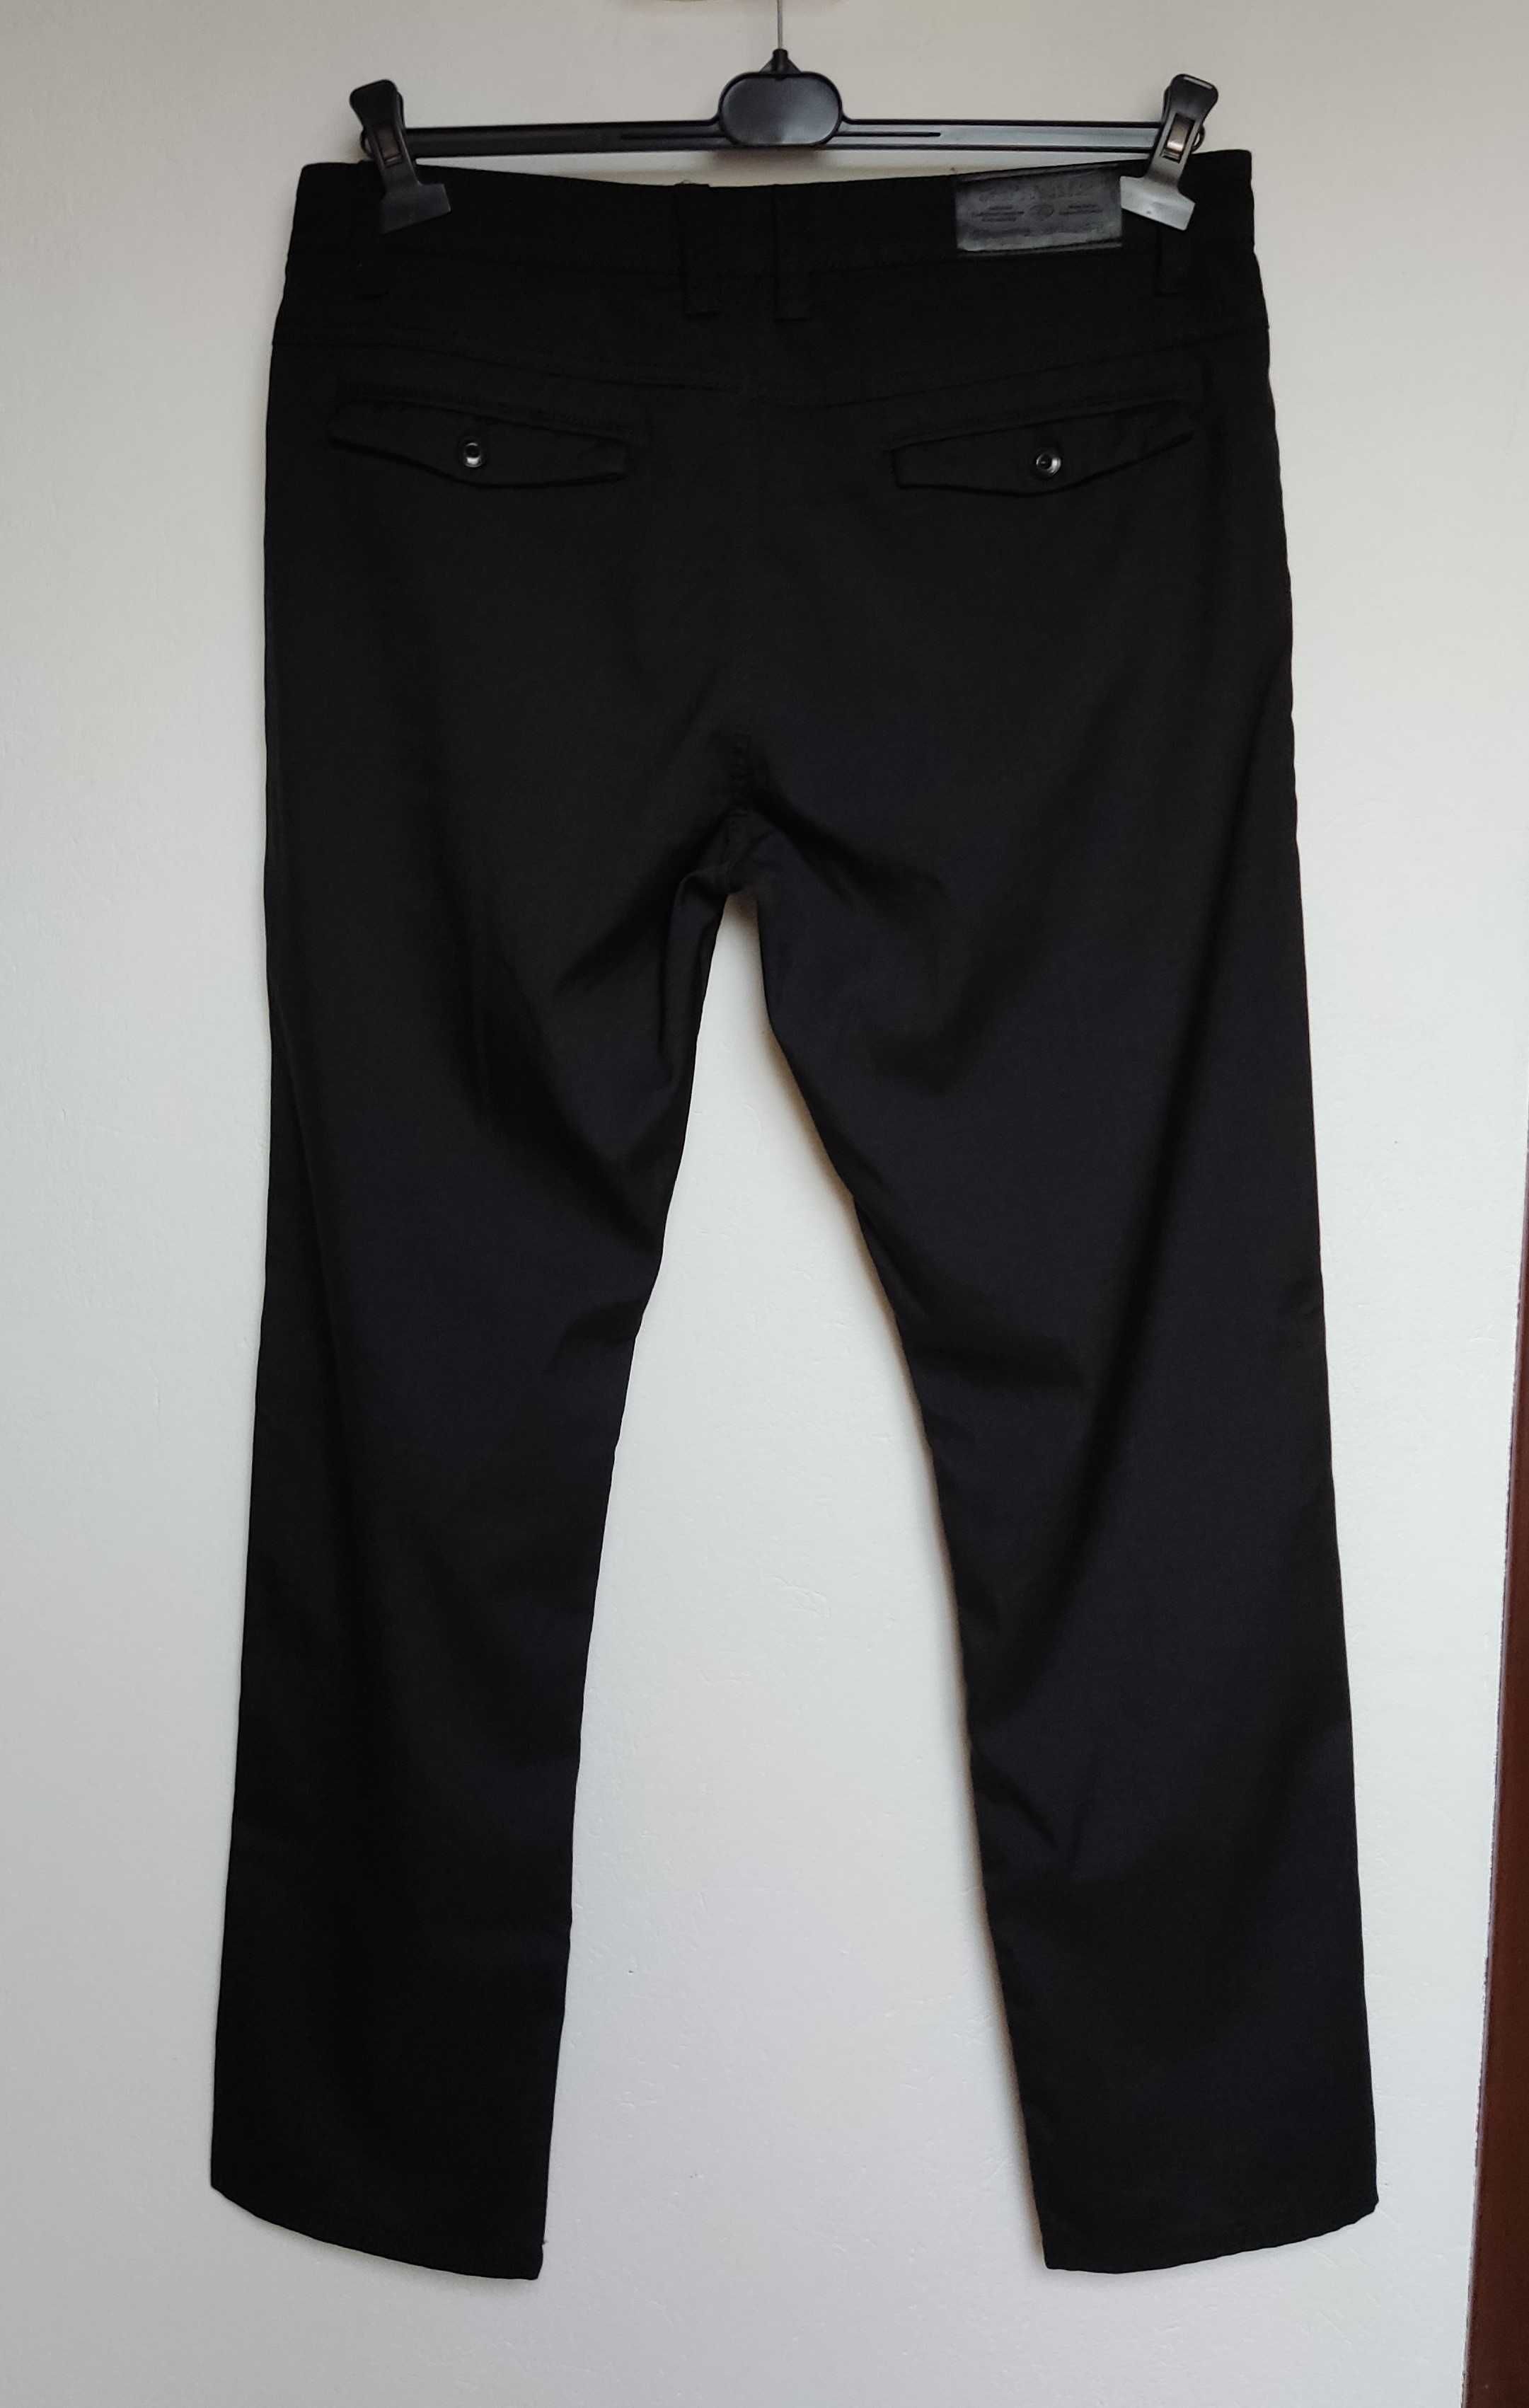 Spodnie męskie czarne materiałowe bawełniane eleganckie gładkie W35L32